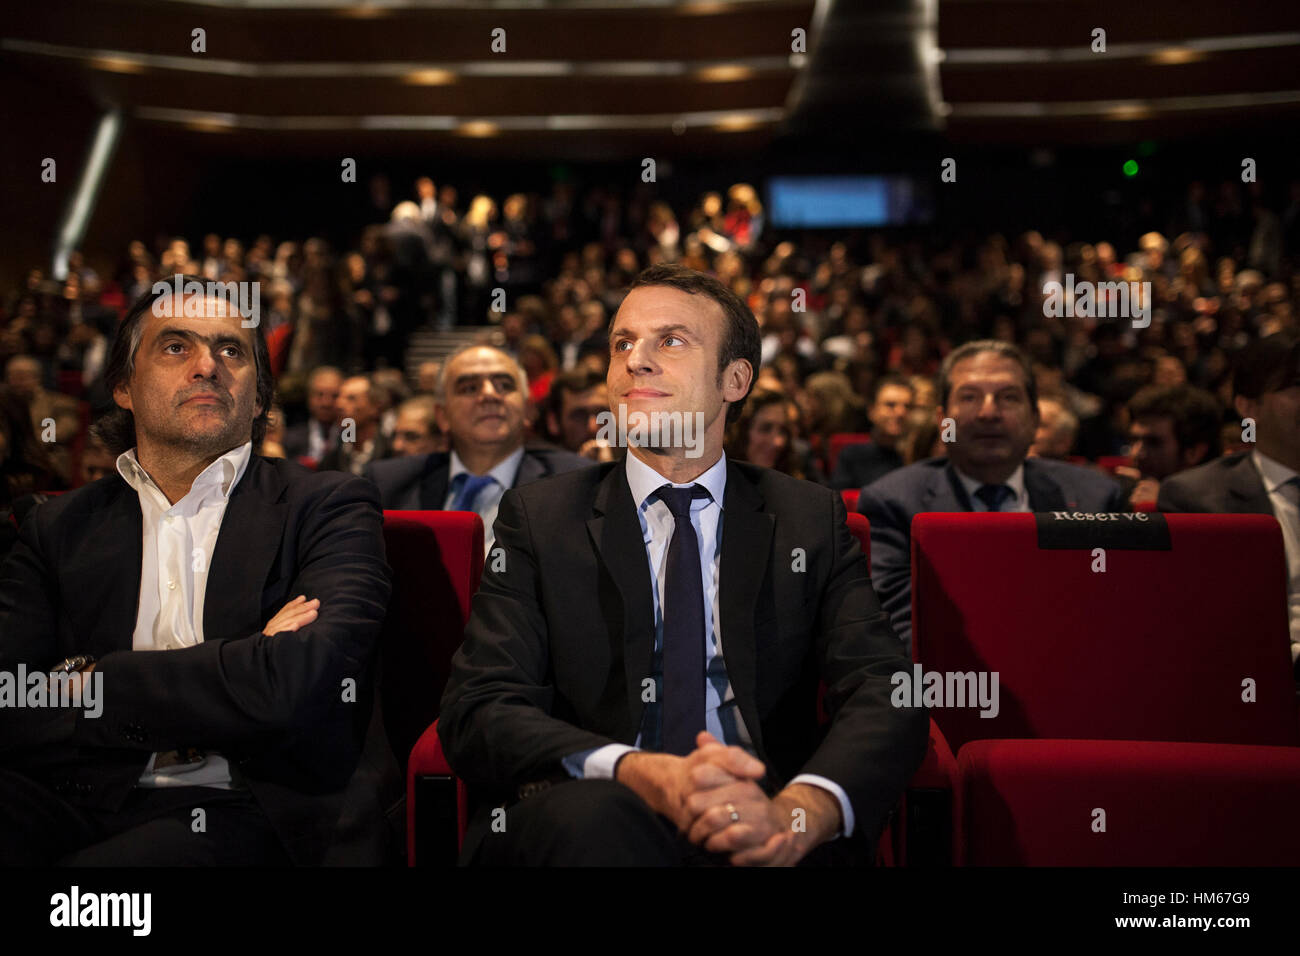 Emmanuel Macron dans Beyrouth, LIBAN - Beyrouth - Liban / Emmanuel Macron, candidate à l'élection présidentielle française en avril 2017 avec son mouvement 'en marche !", au cours d'une réunion avec la communauté économique française et à l'ESA (Ecole supérieure des affaires, un projet de coopération franco-libanais) sur le thème : "La France, une révolution Le développement économique et social pour le 21e siècle ' Emmanuel Macron s'est rendu à Beyrouth pour se réunir le 24 janvier 2017, Michel Aoun au président de la République libanaise, Saad Hariri le Premier ministre libanais. - Bilal Tarabey / Le Pictorium Banque D'Images